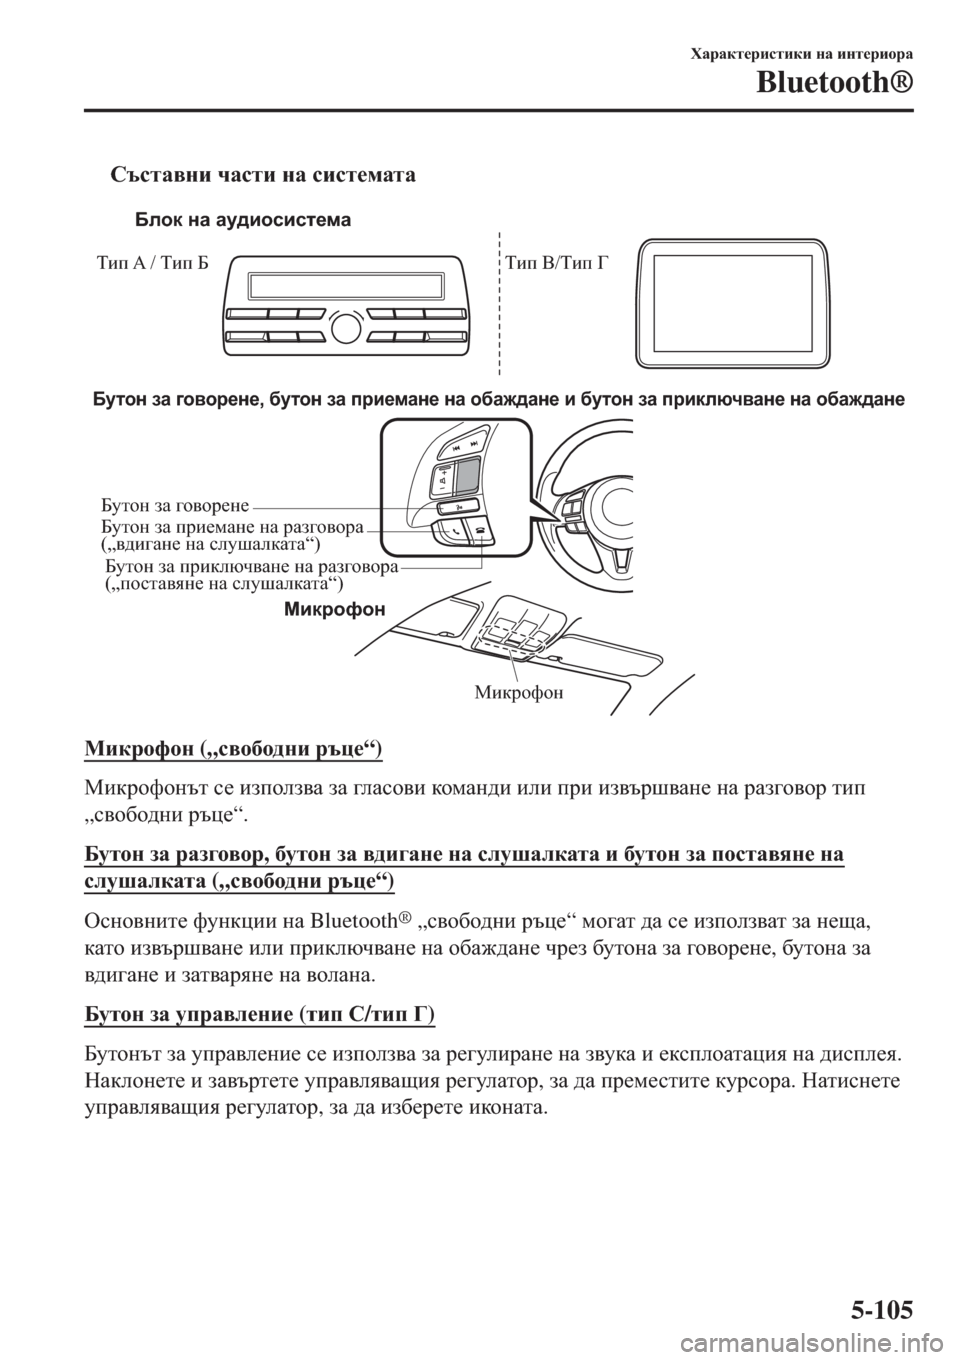 MAZDA MODEL 3 HATCHBACK 2015  Ръководство на потребителя (in Bulgarian) tKtklZ\gb qZklb gZ kbkl_fZlZ
Микрофон
Бутон за говорене, бутон за приемане на обаждане и бутон за приключване